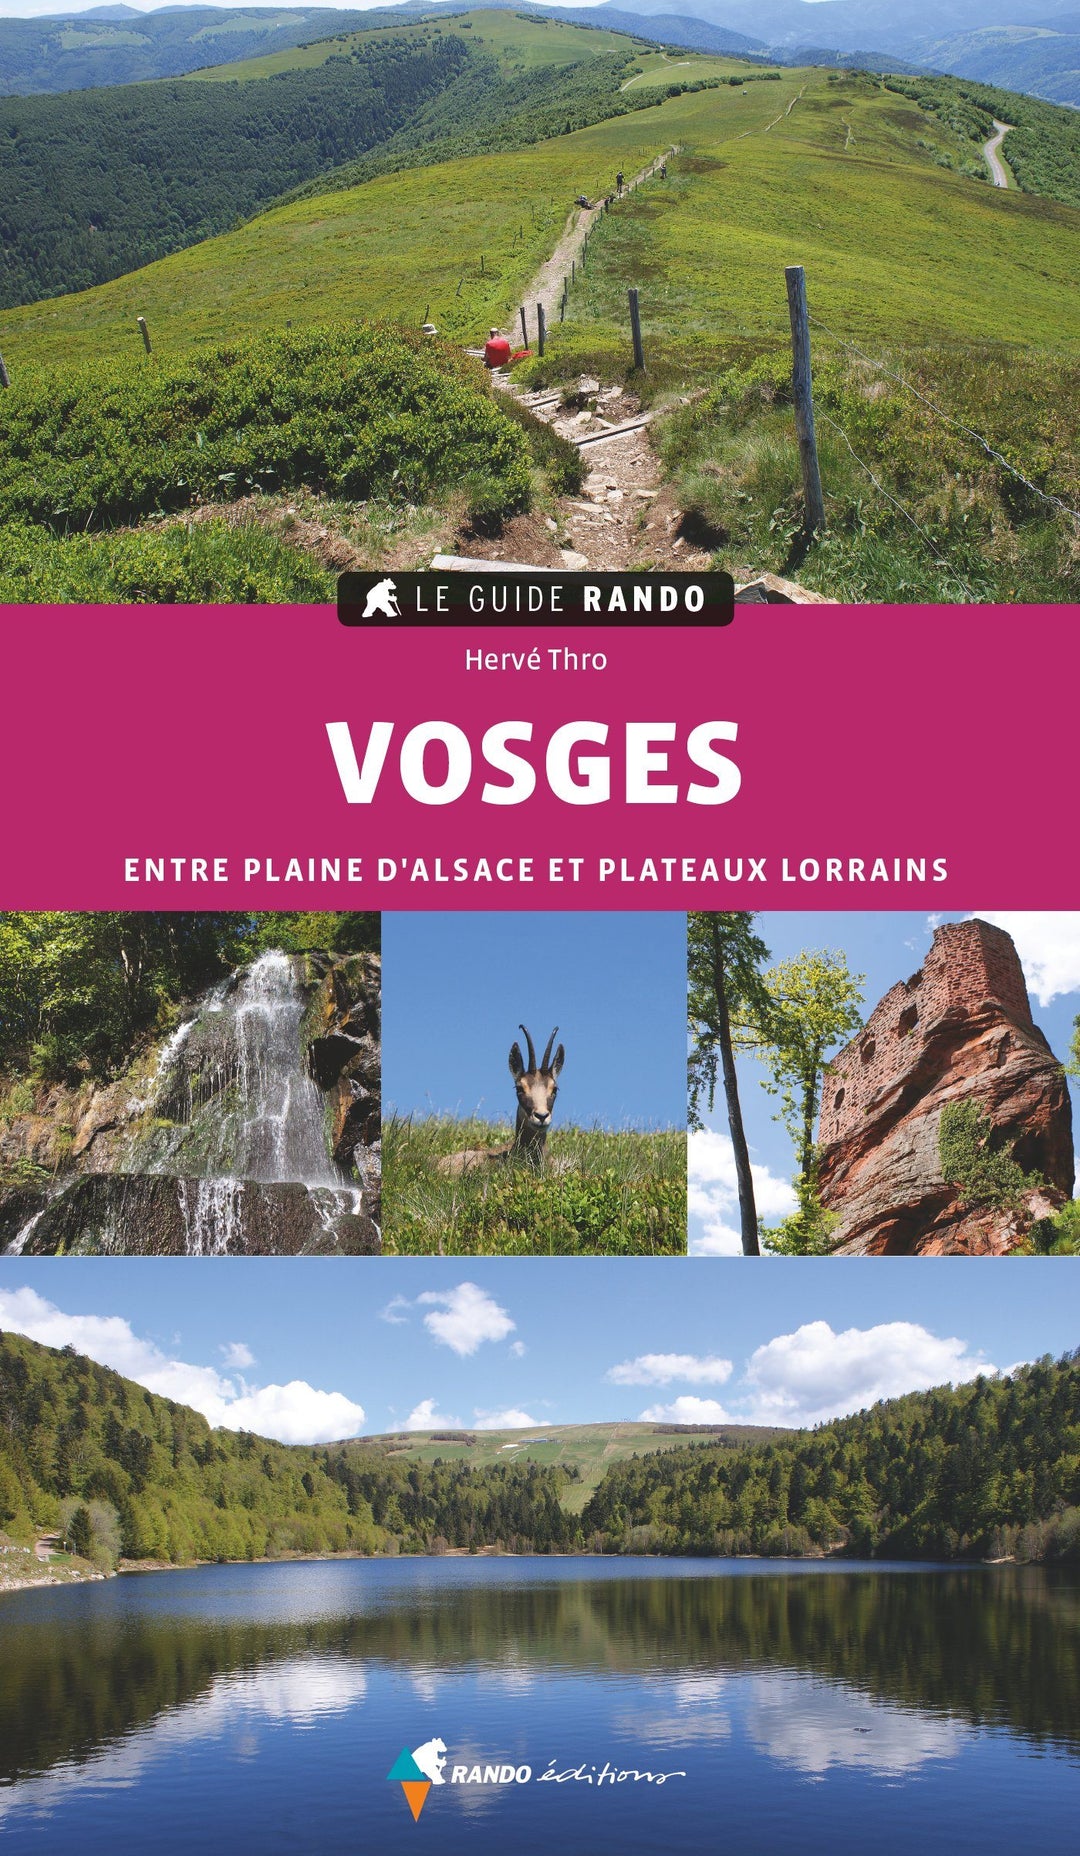 Le Guide Rando - Vosges (entre plaine d'Alsace et plateau Lorrain) | Rando Editions guide de randonnée Rando Editions 